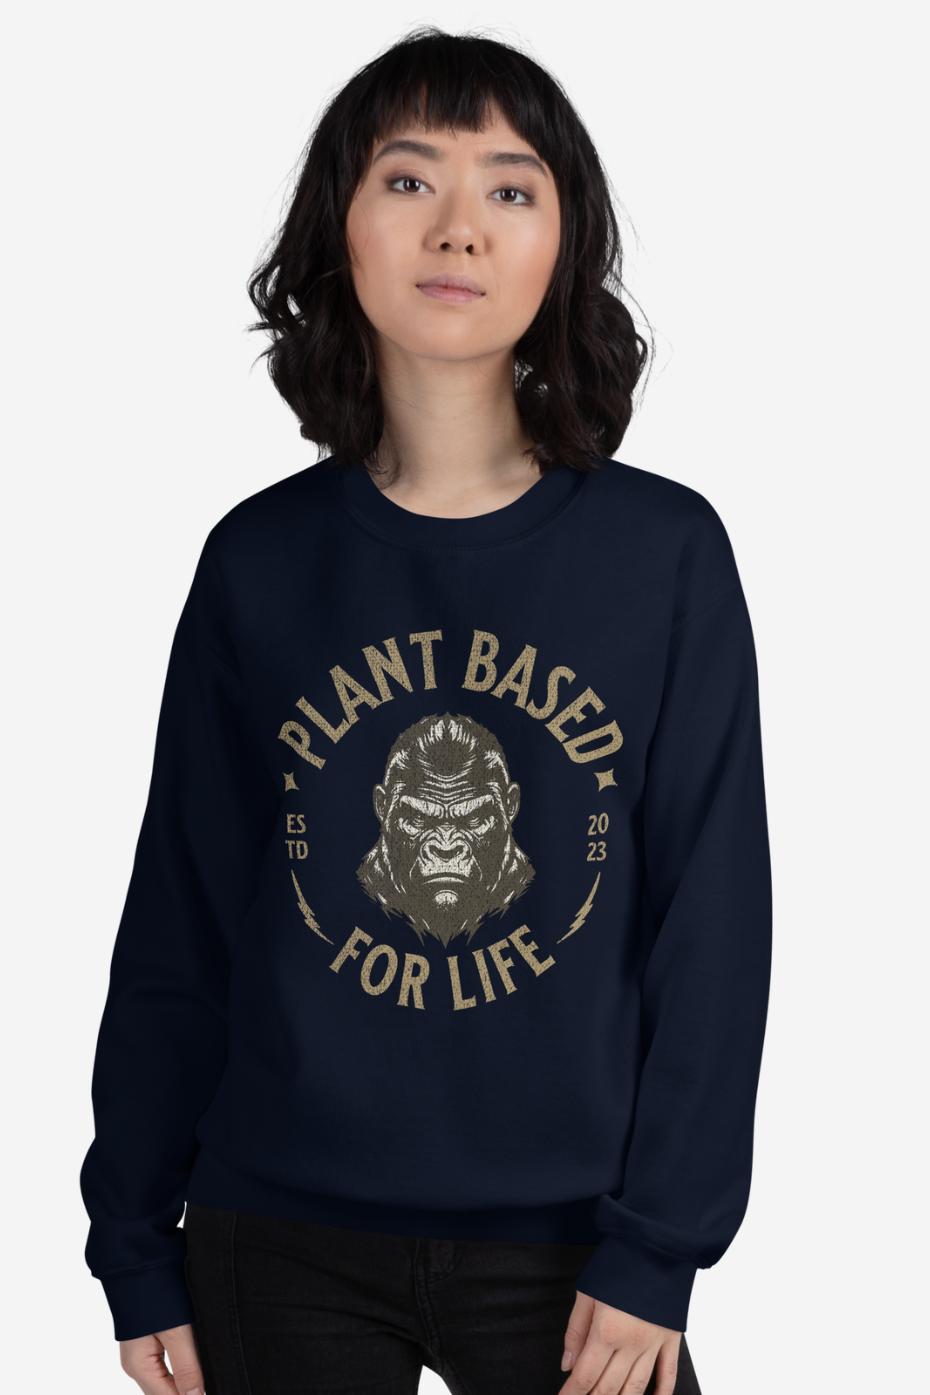 Plant Based For Life - Unisex Sweatshirt